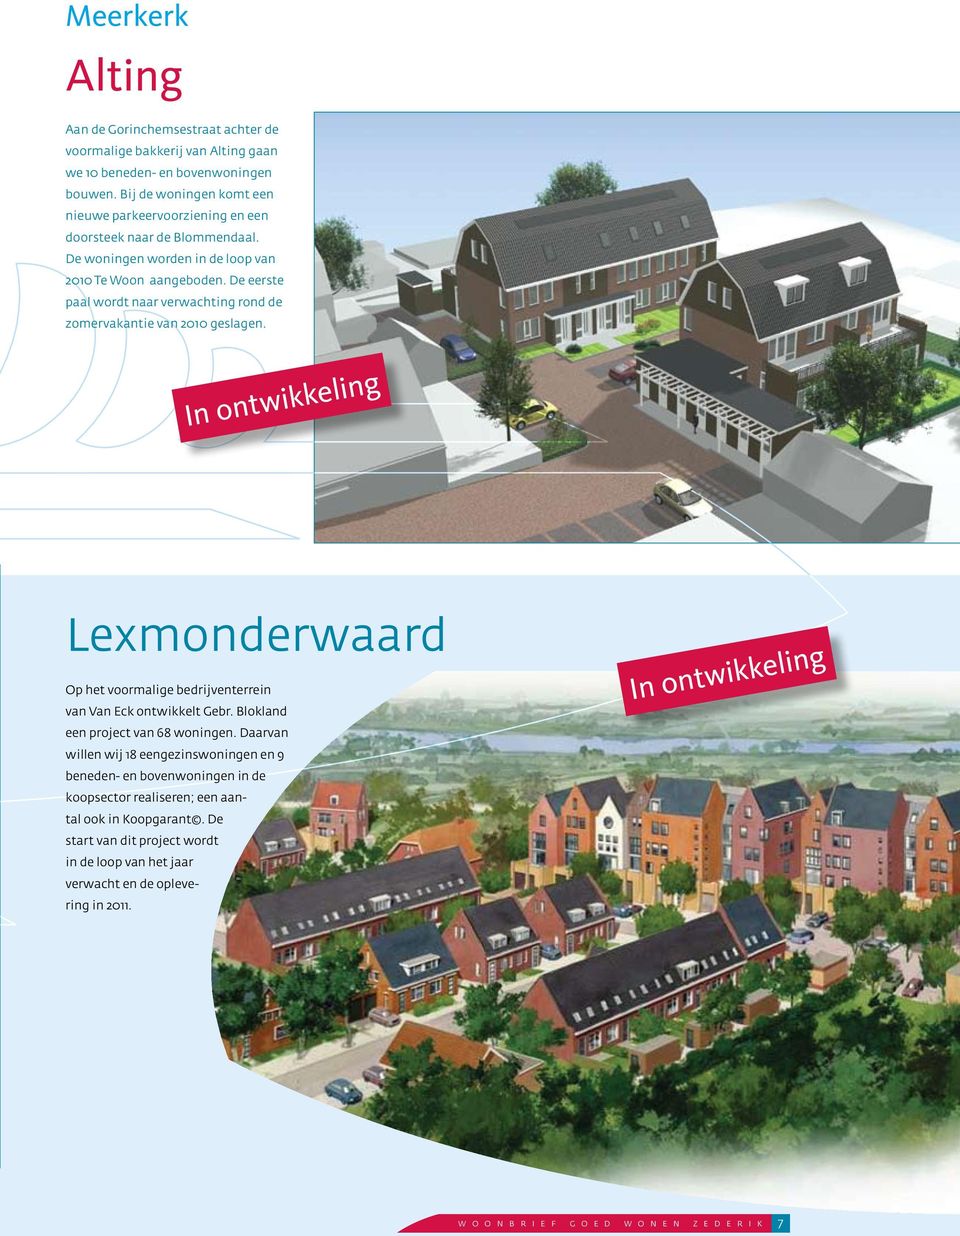 De eerste paal wordt naar verwachting rond de zomervakantie van 2010 geslagen. In ontwikkeling Lexmonderwaard Op het voormalige bedrijventerrein van Van Eck ontwikkelt Gebr.